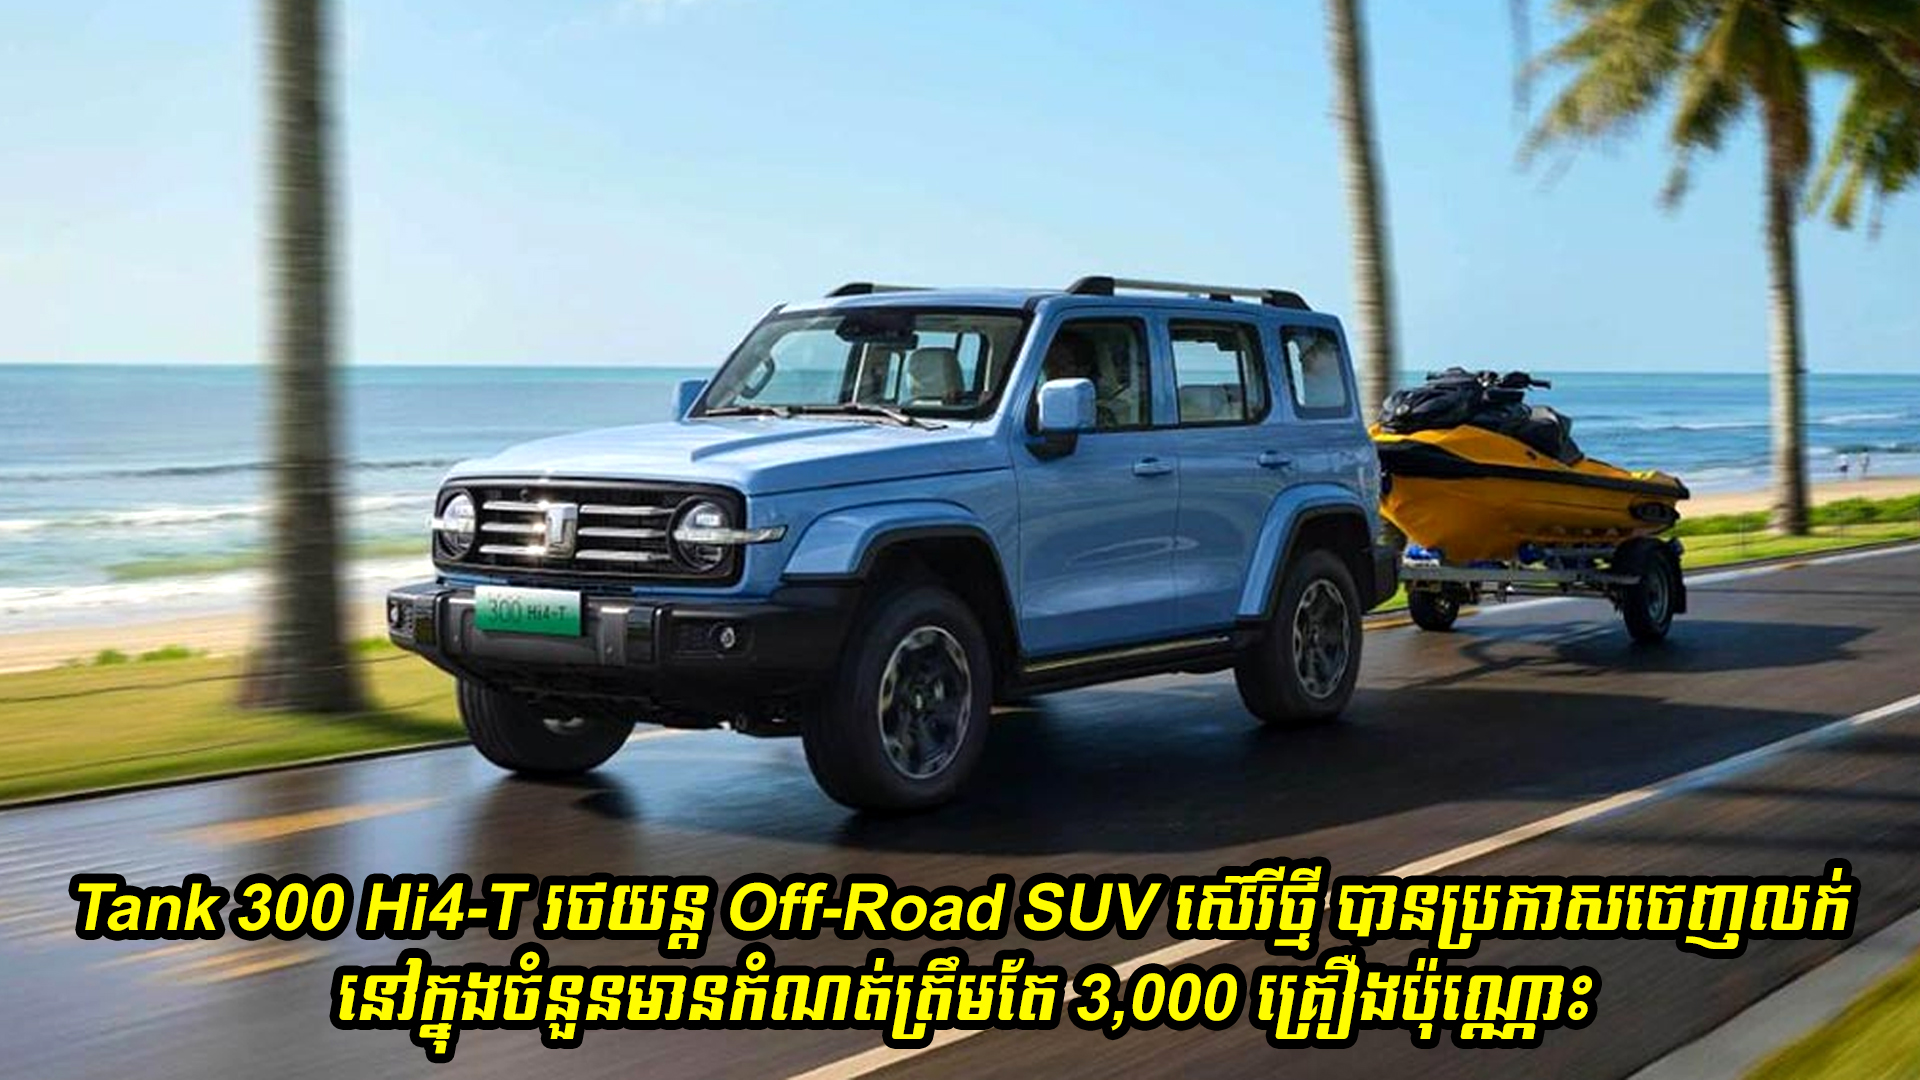 Tank 300 Hi4-T រថយន្ត Off-Road SUV ស៊េរីថ្មី បានប្រកាសចេញលក់ជាផ្លូវការជាមួយចំនួនមានកំណត់ត្រឹមតែ 3,000 គ្រឿងប៉ុណ្ណោះ